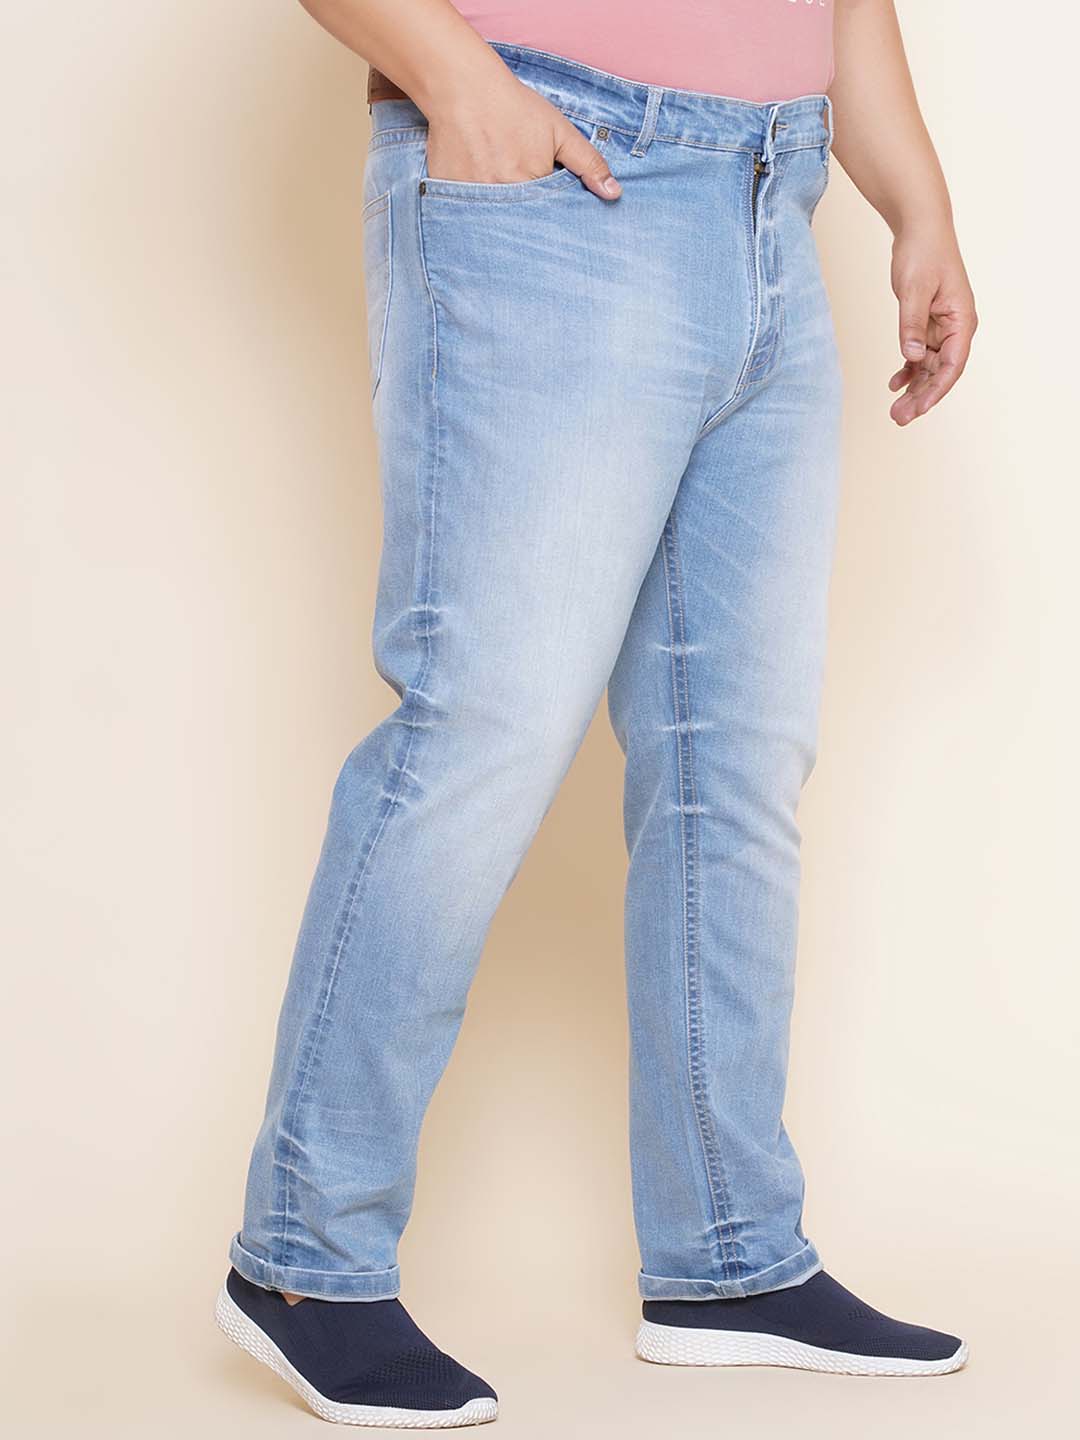 bottomwear/jeans/EJPJ25101/ejpj25101-4.jpg